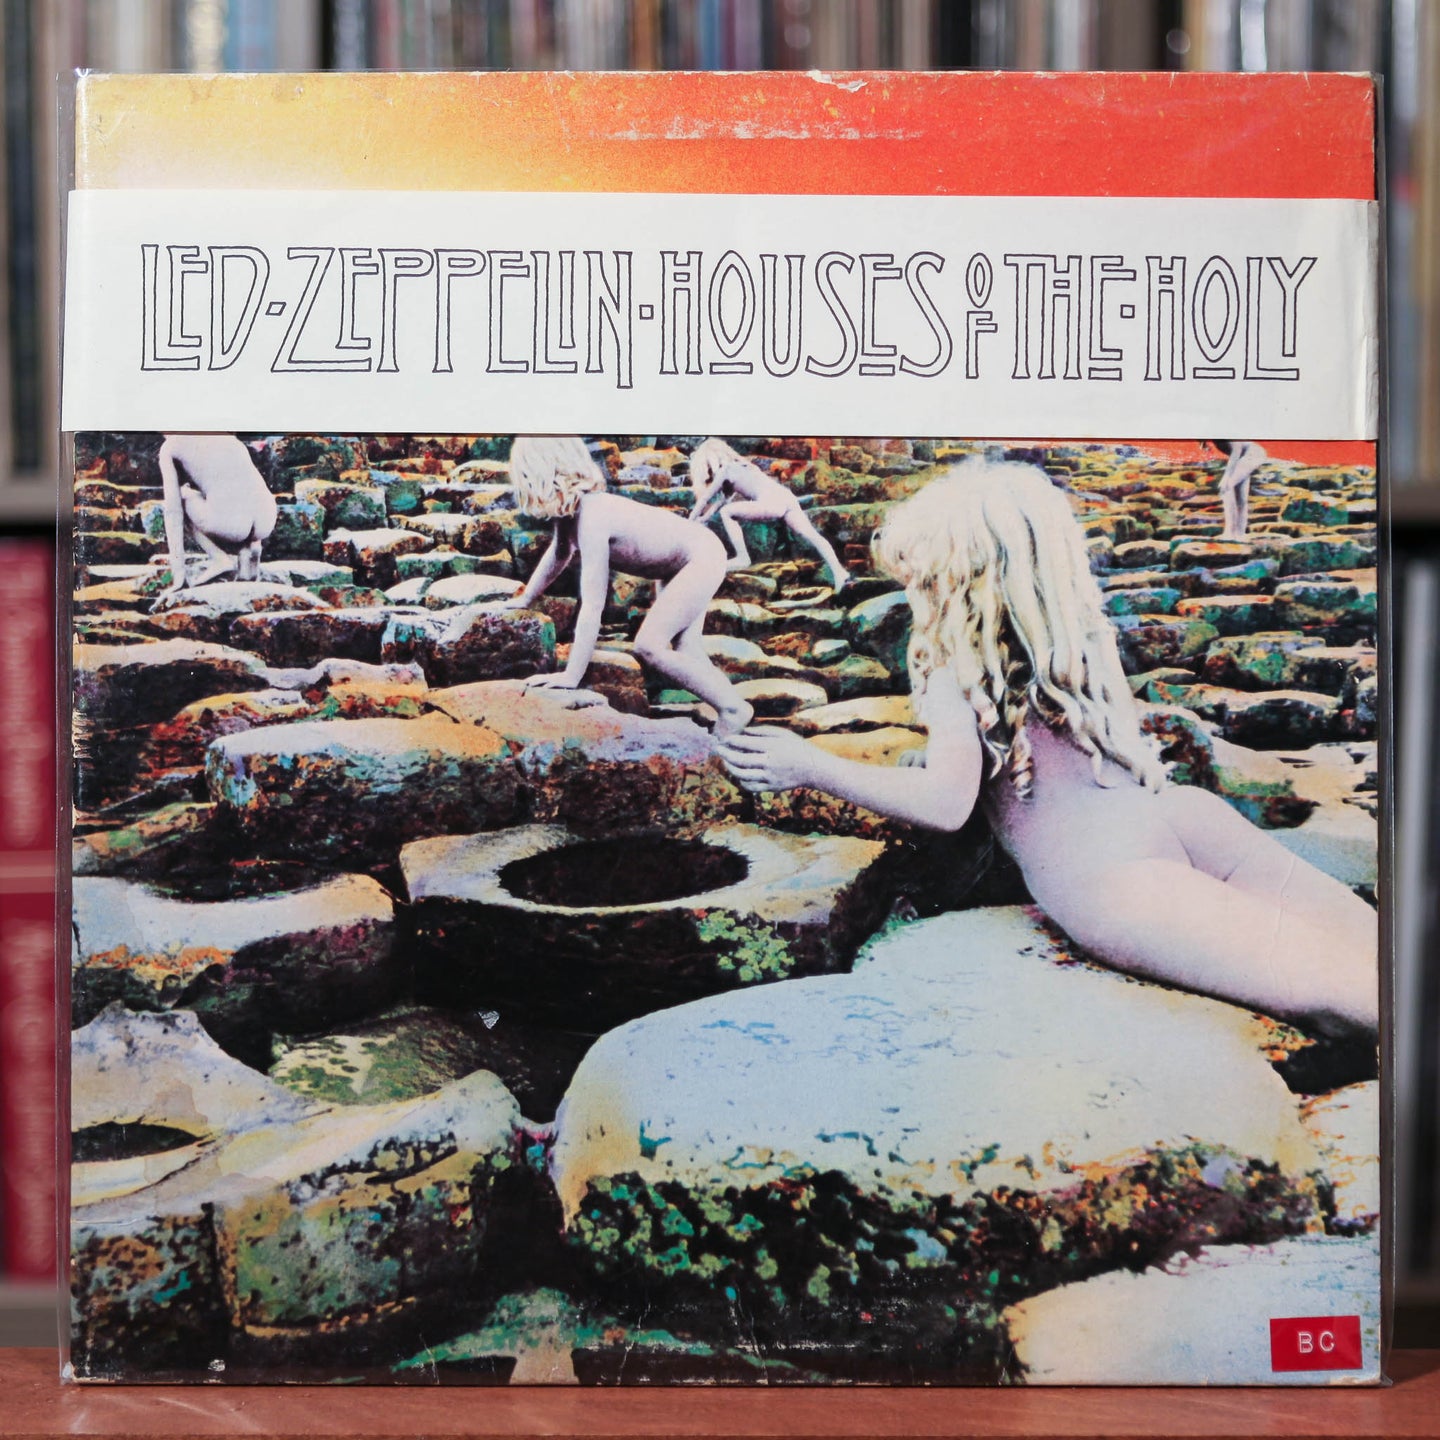 Led Zeppelin - Houses of the Holy - 1977 Atlantic, VG/VG